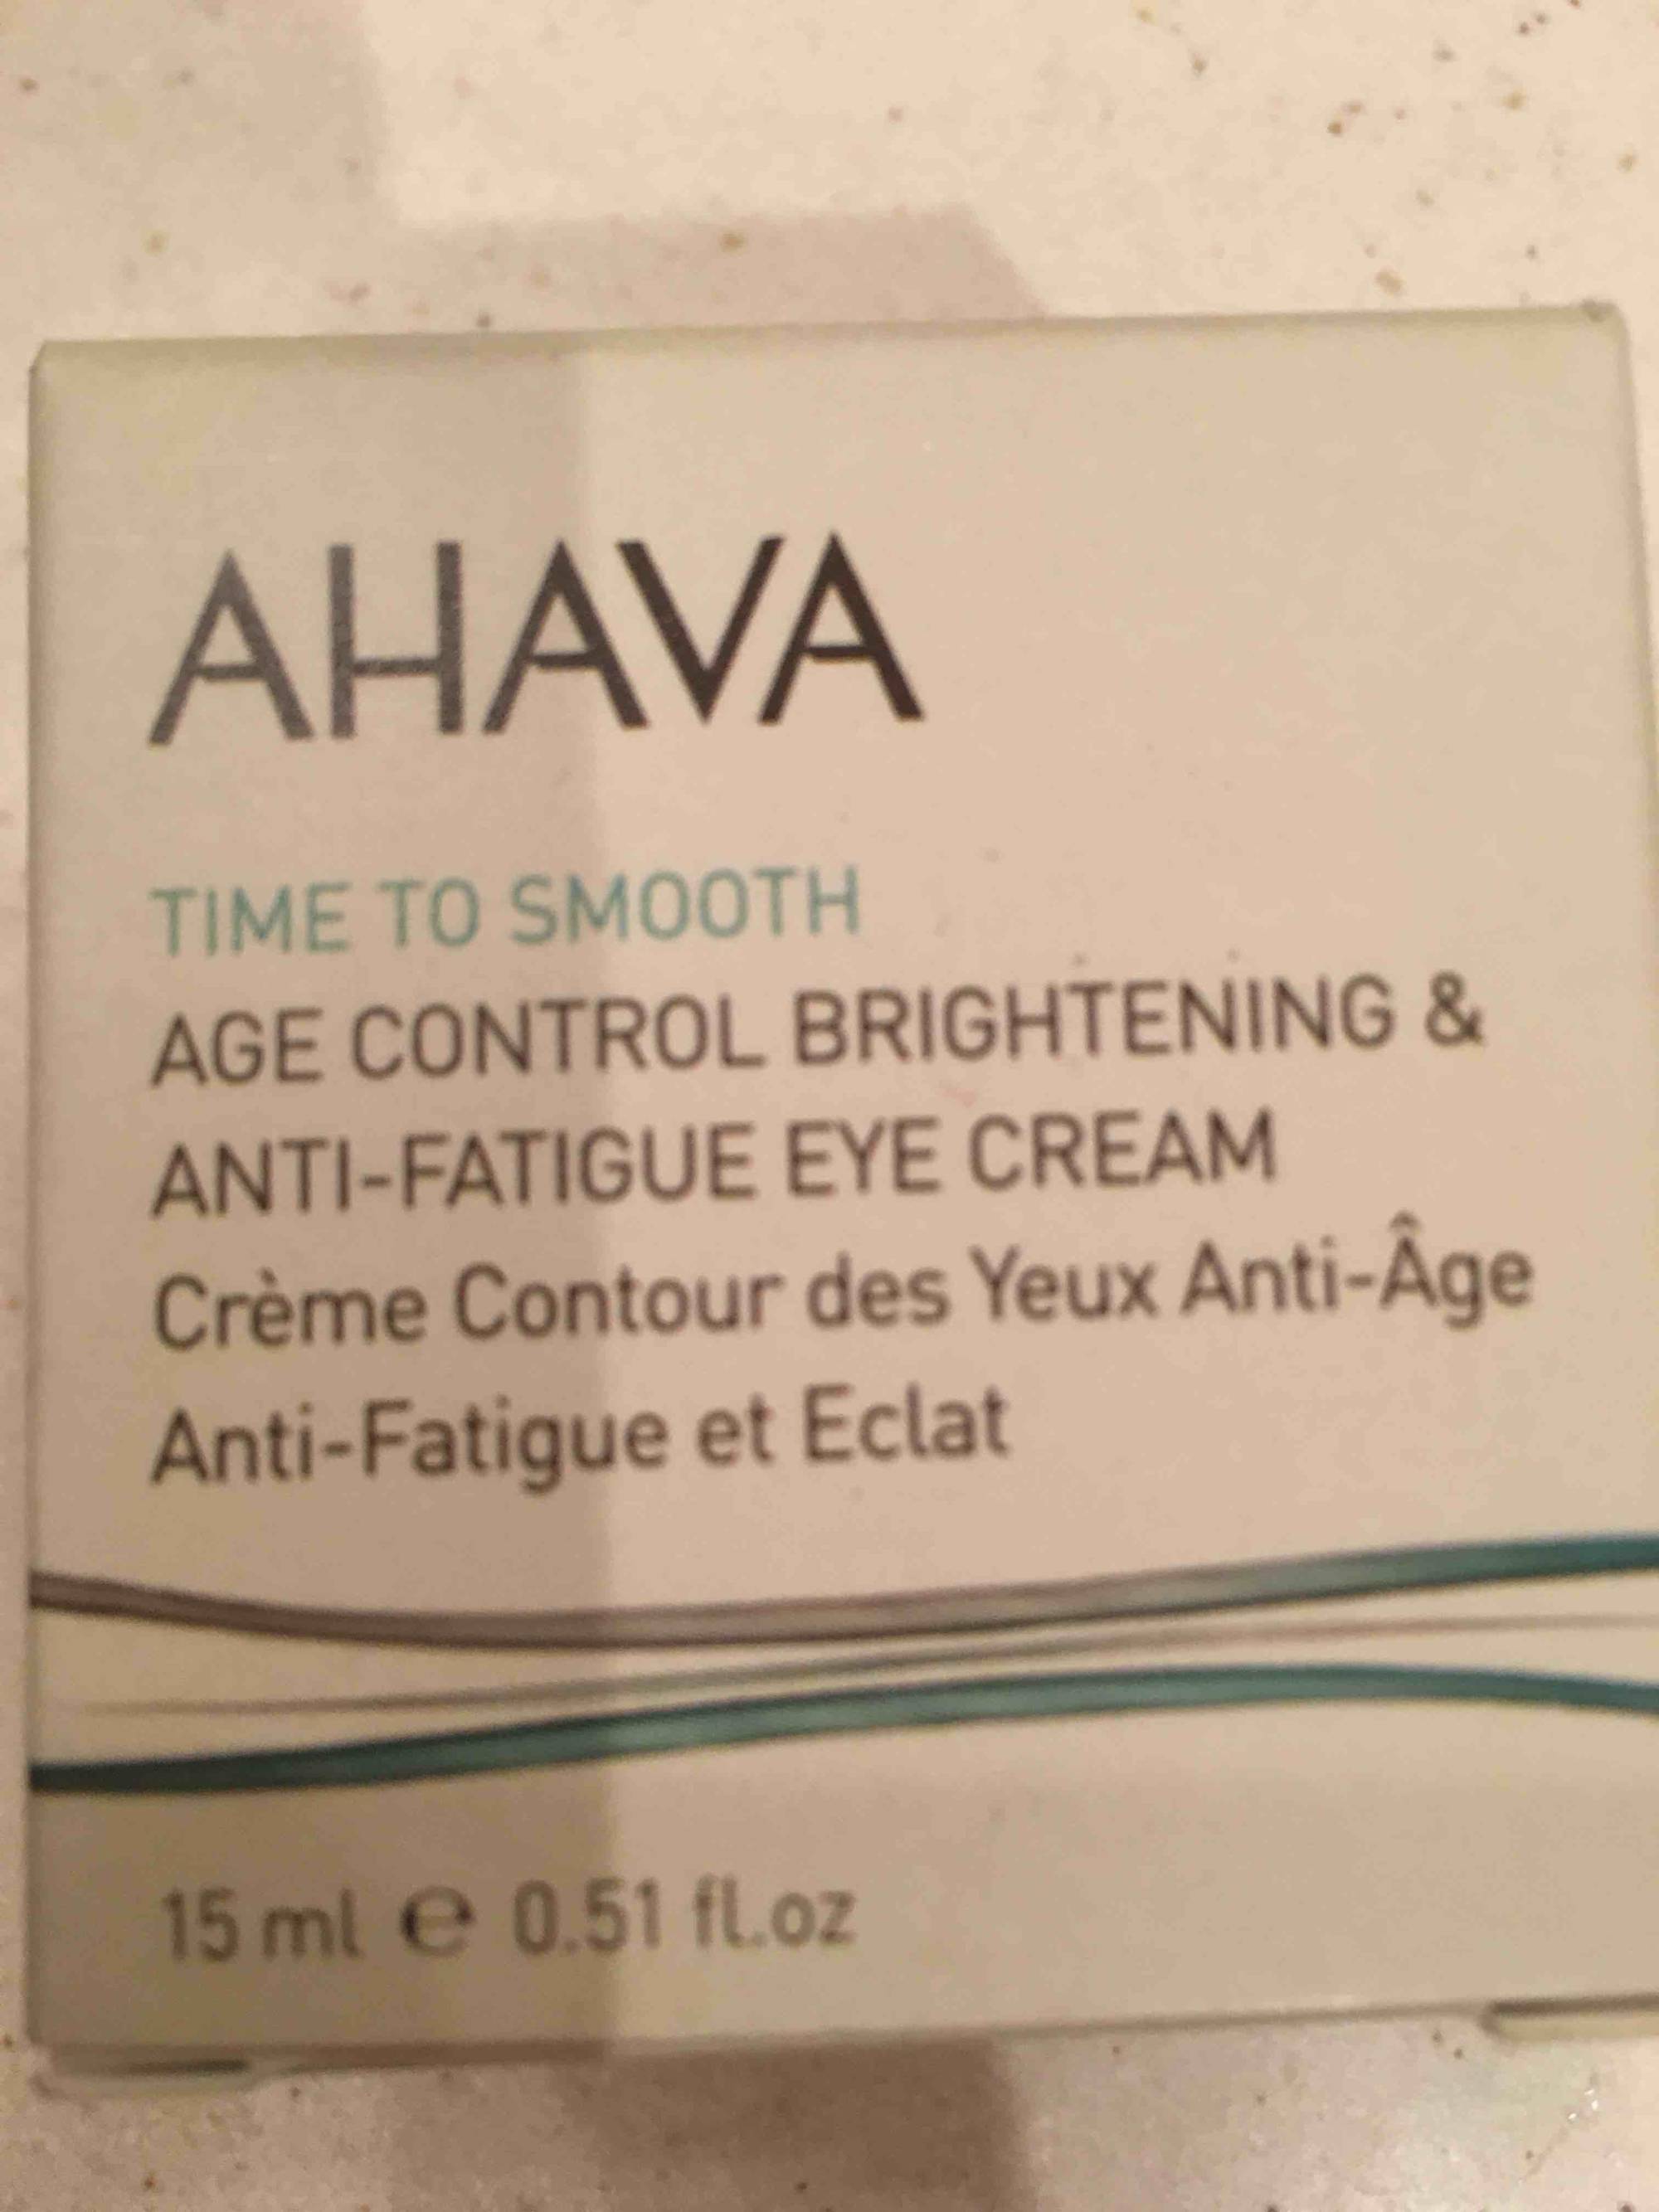 AHAVA - Time to smooth - Crème contour des yeux